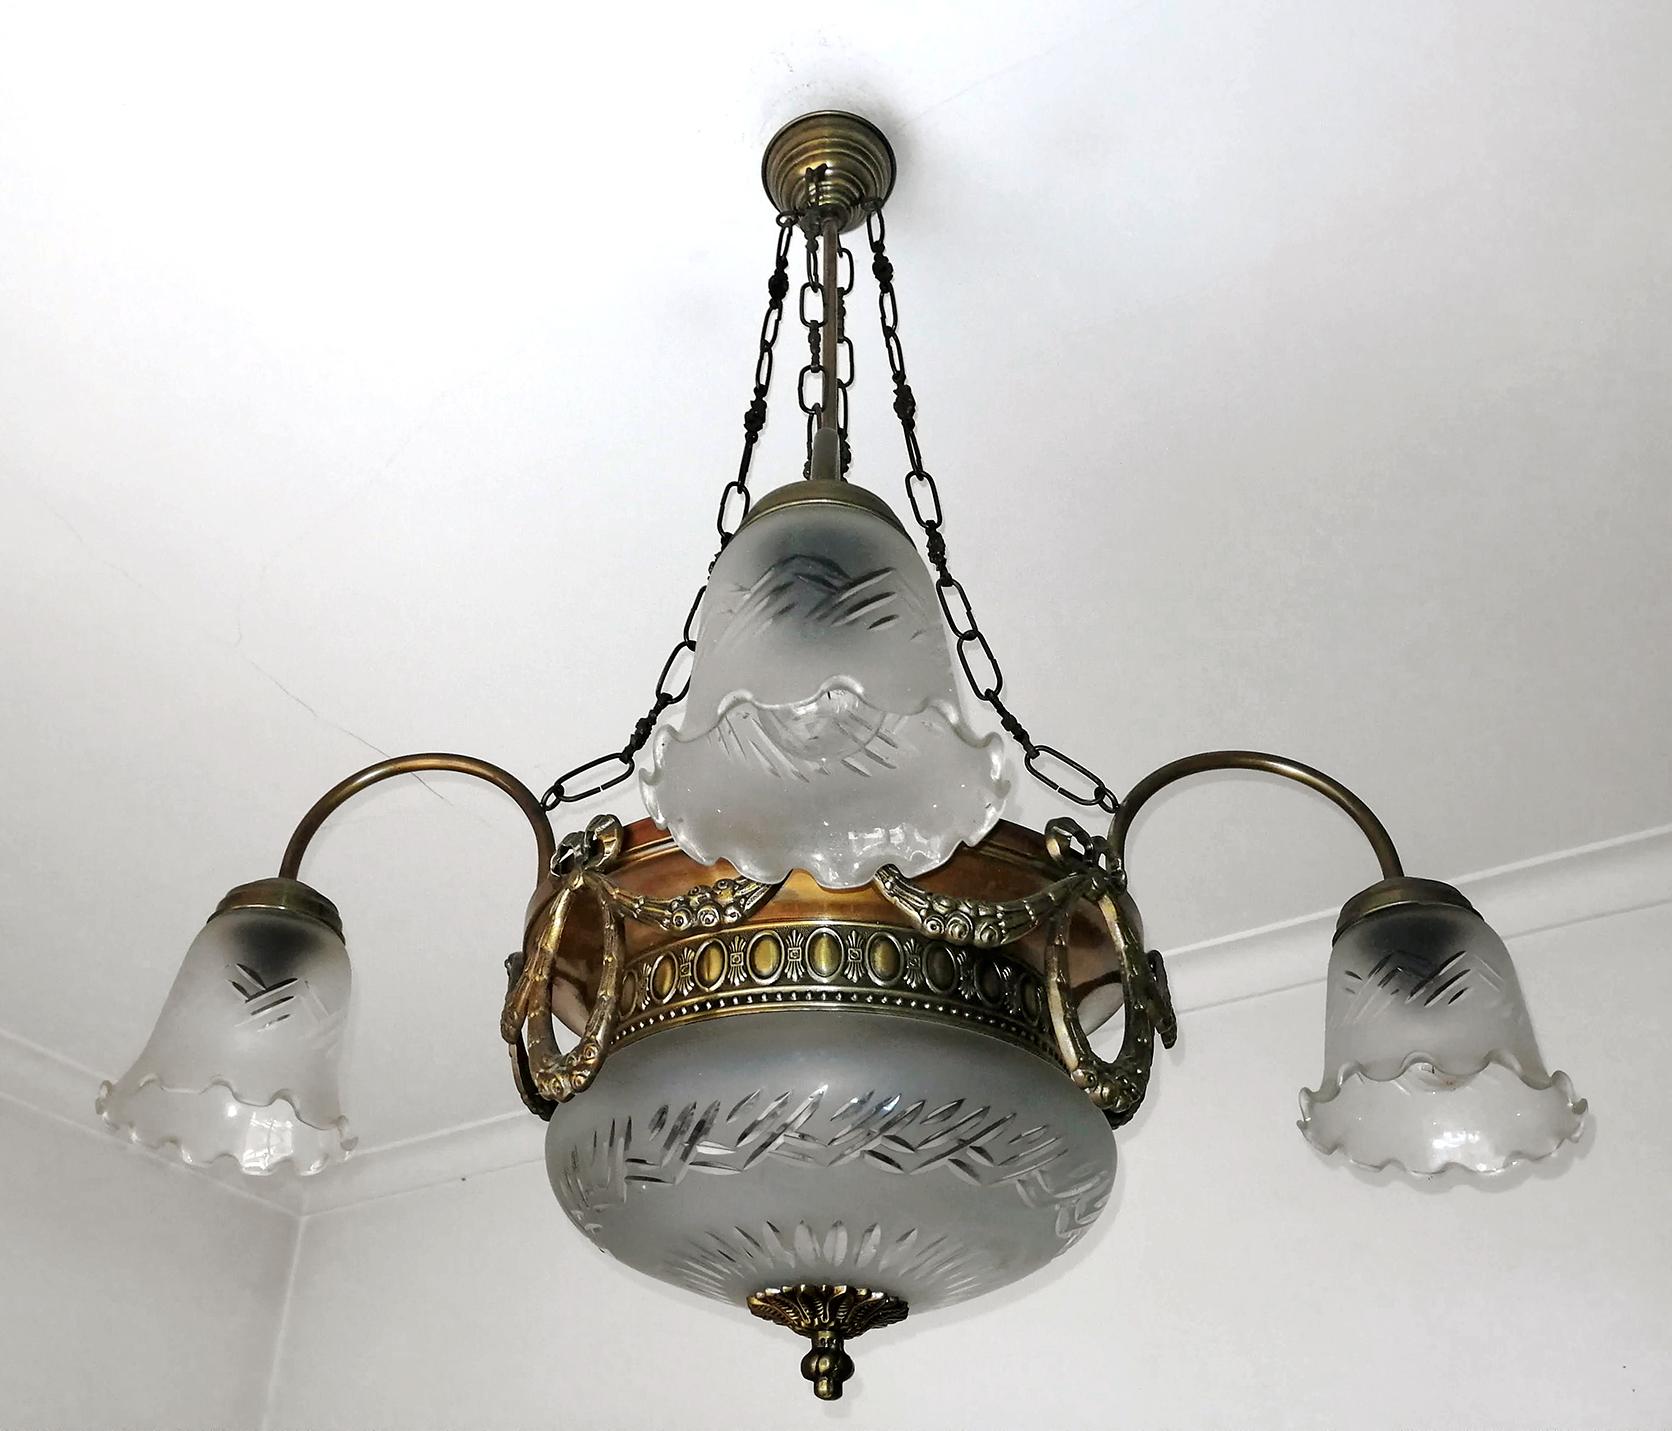 Eine ungewöhnliche antike Französisch Art Deco Rad geschnitten geätzten Glaskugeln 6-Licht-Kronleuchter,
6 Glühbirnen E14/ guter Betriebszustand.
Maßnahmen:
Durchmesser 70cm/ 27.56 in
Höhe 80cm/ 31.50 in
Glasschale 25 x 12 cm.
Glaskugeln 12 x 12